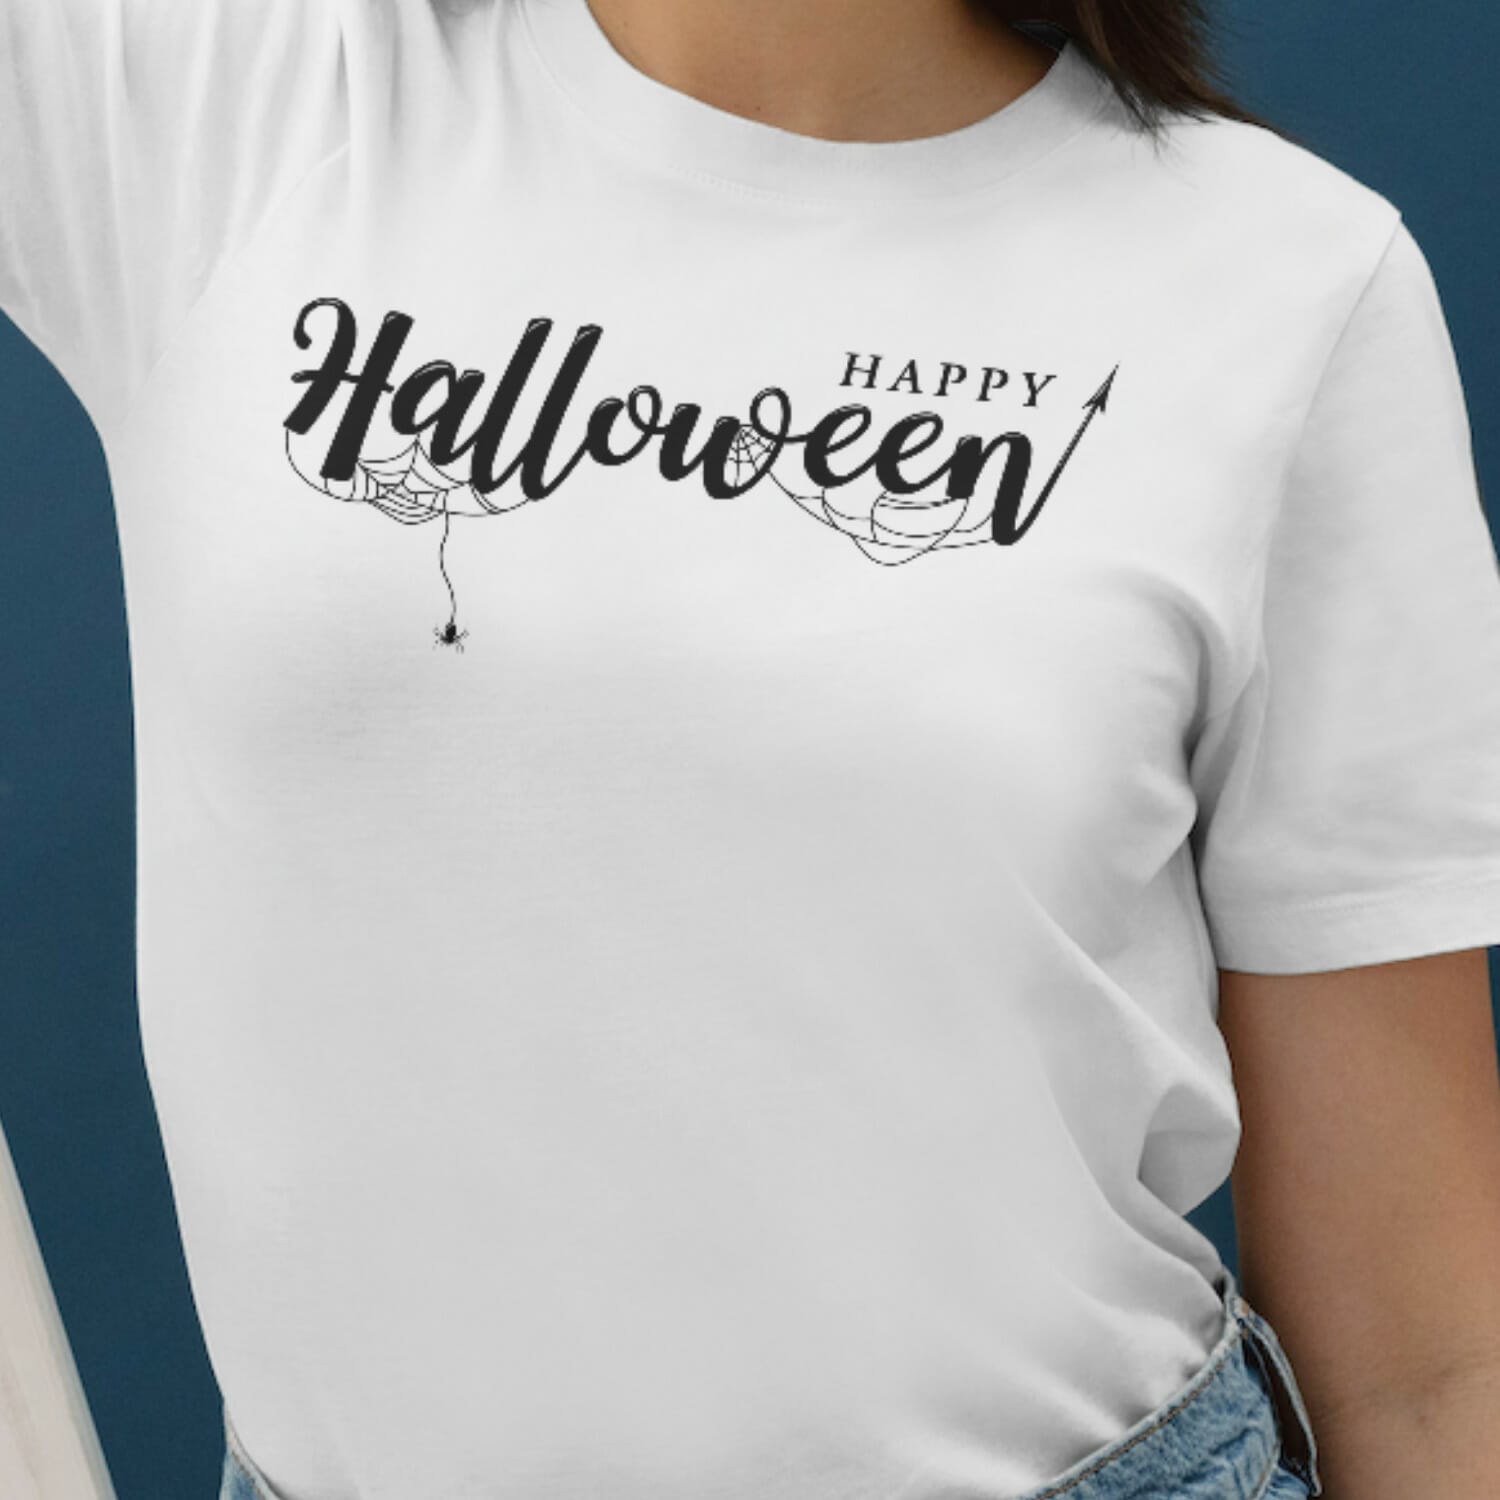 Happy Halloween - Spider Web Tshirt Design